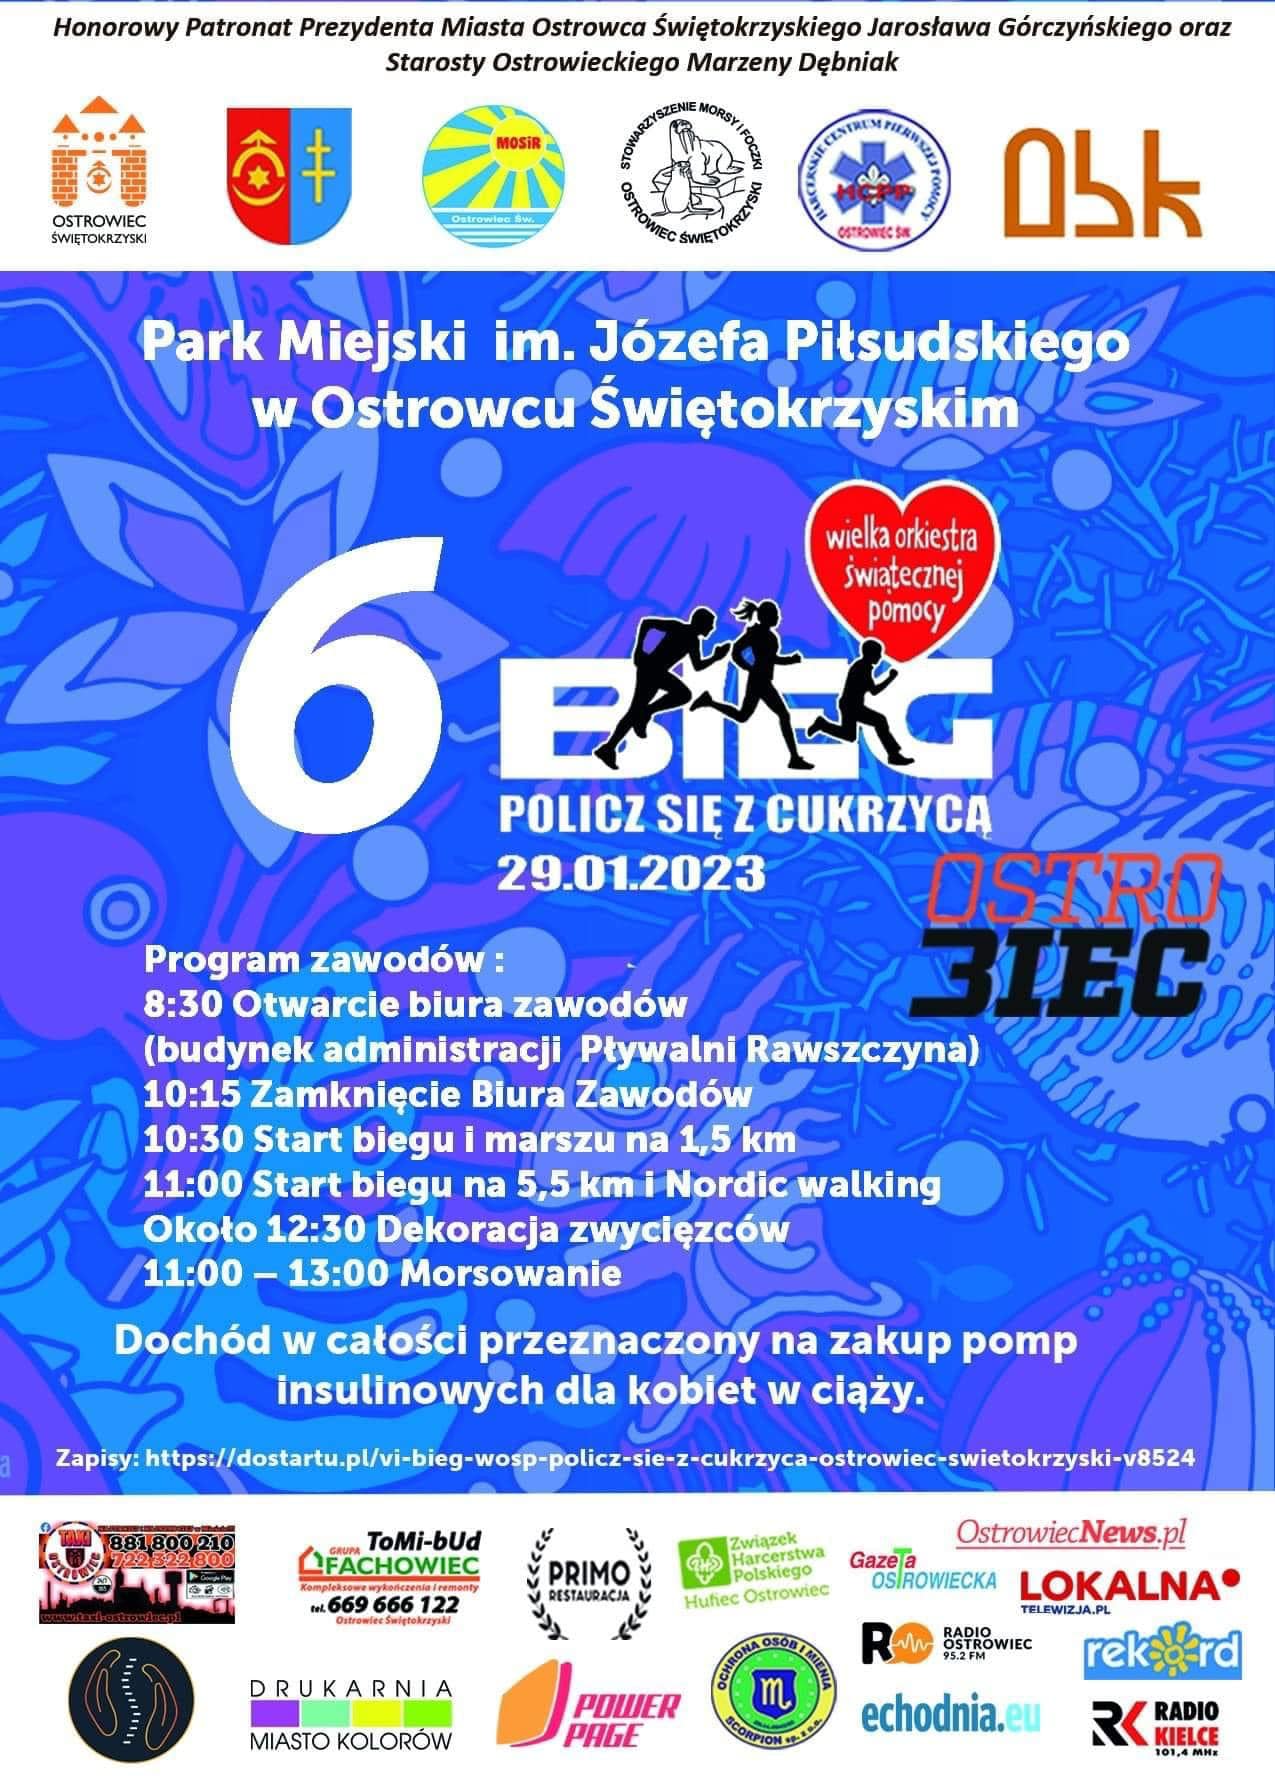 Plakat promujący 6 Bieg Policz się z cukrzycą